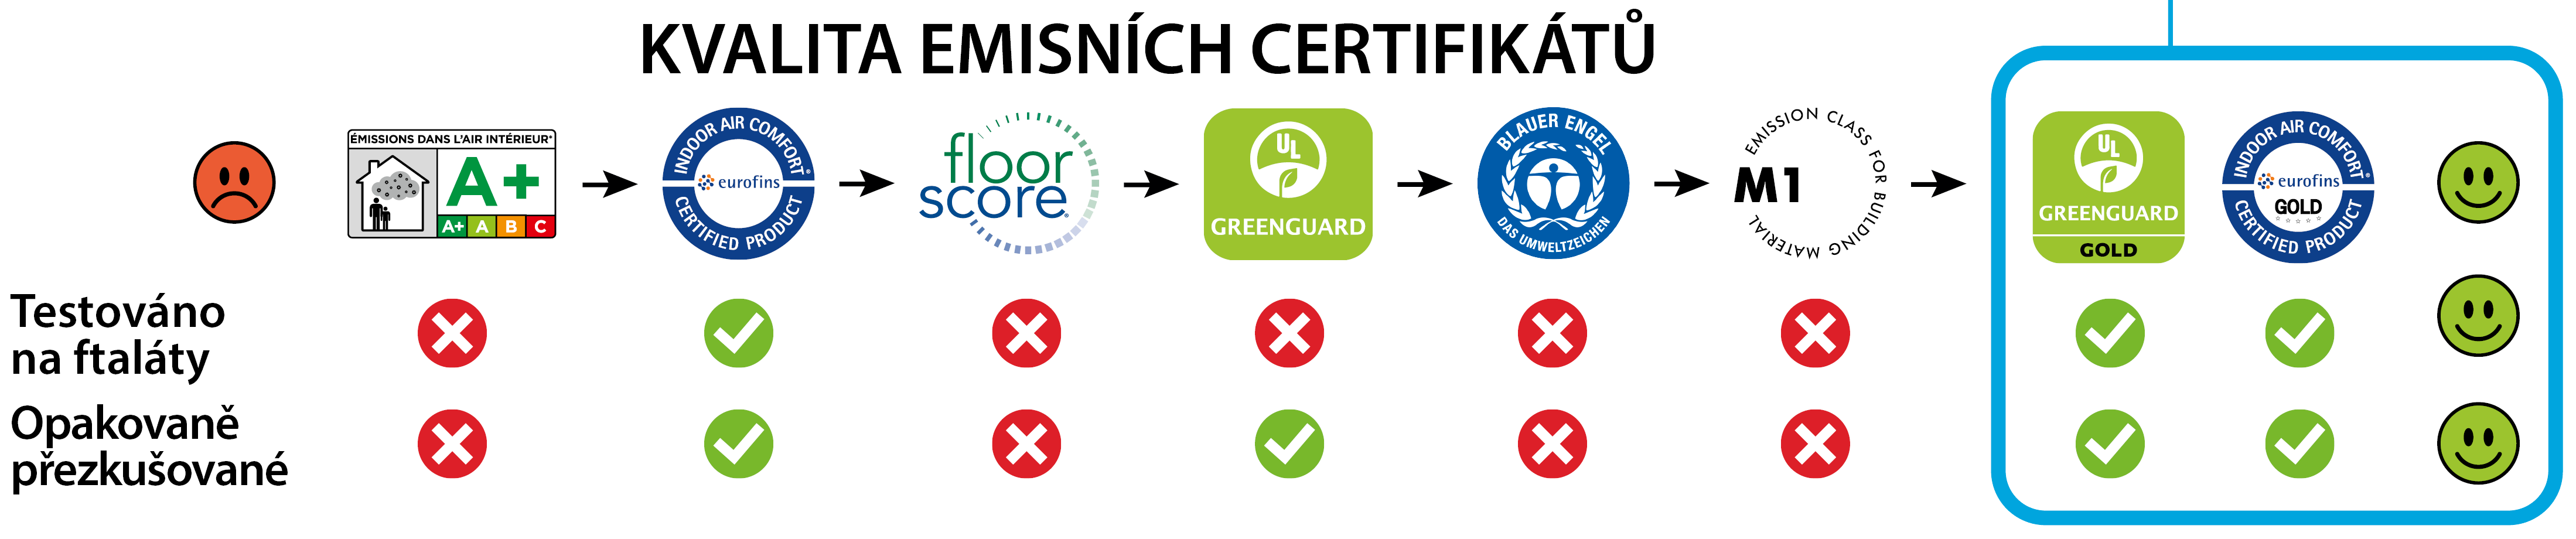 Kvalita emisních certifikátů